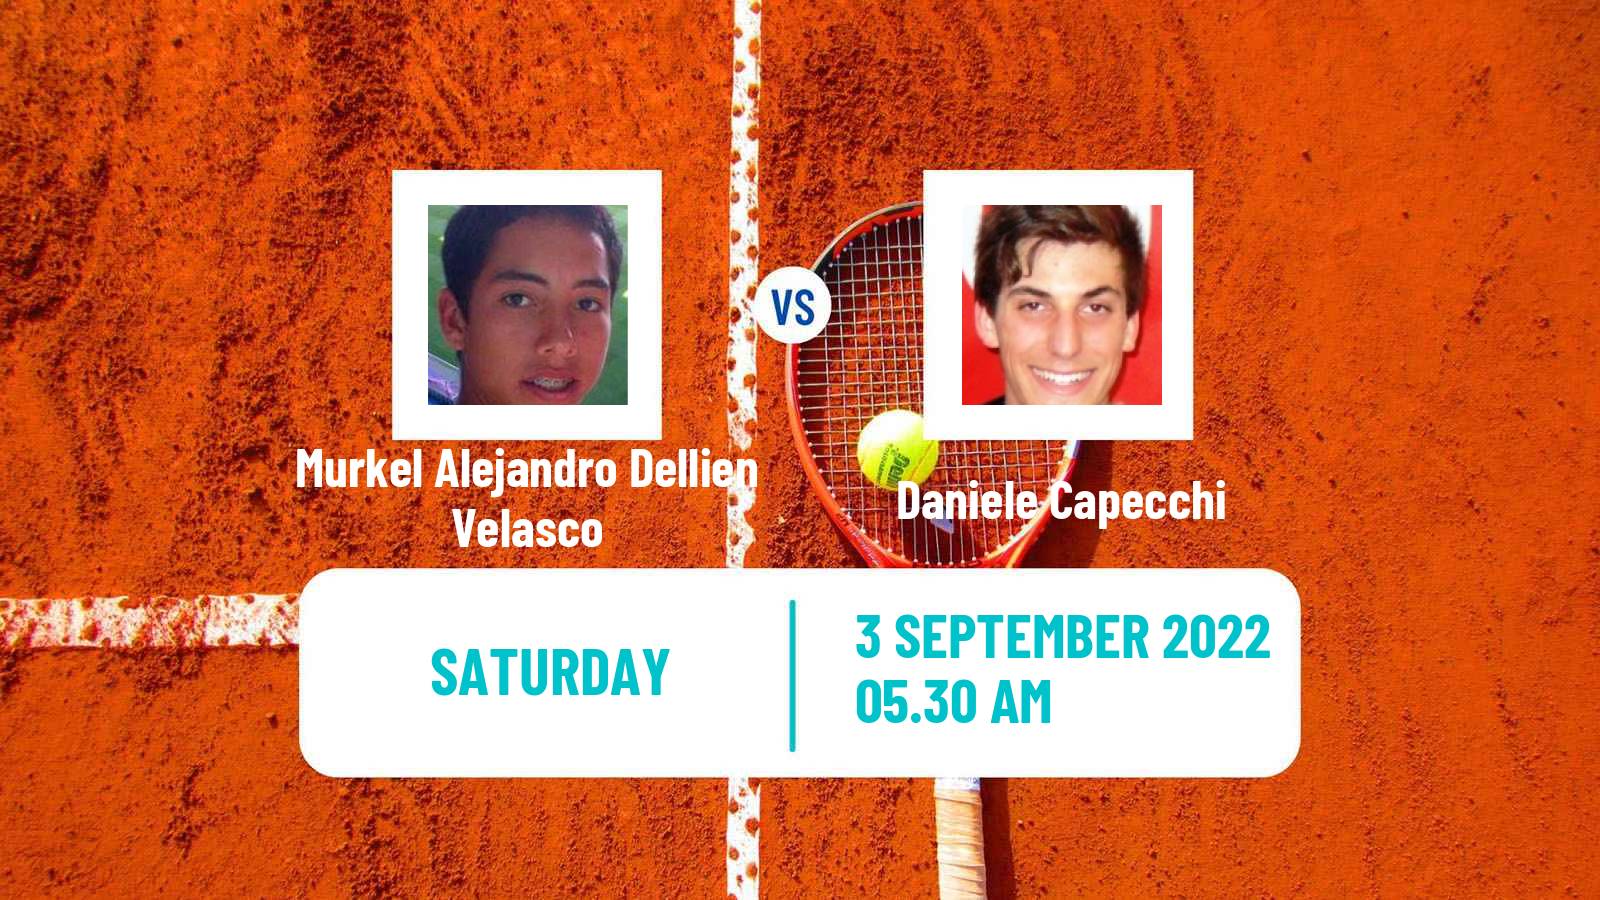 Tennis ITF Tournaments Murkel Alejandro Dellien Velasco - Daniele Capecchi